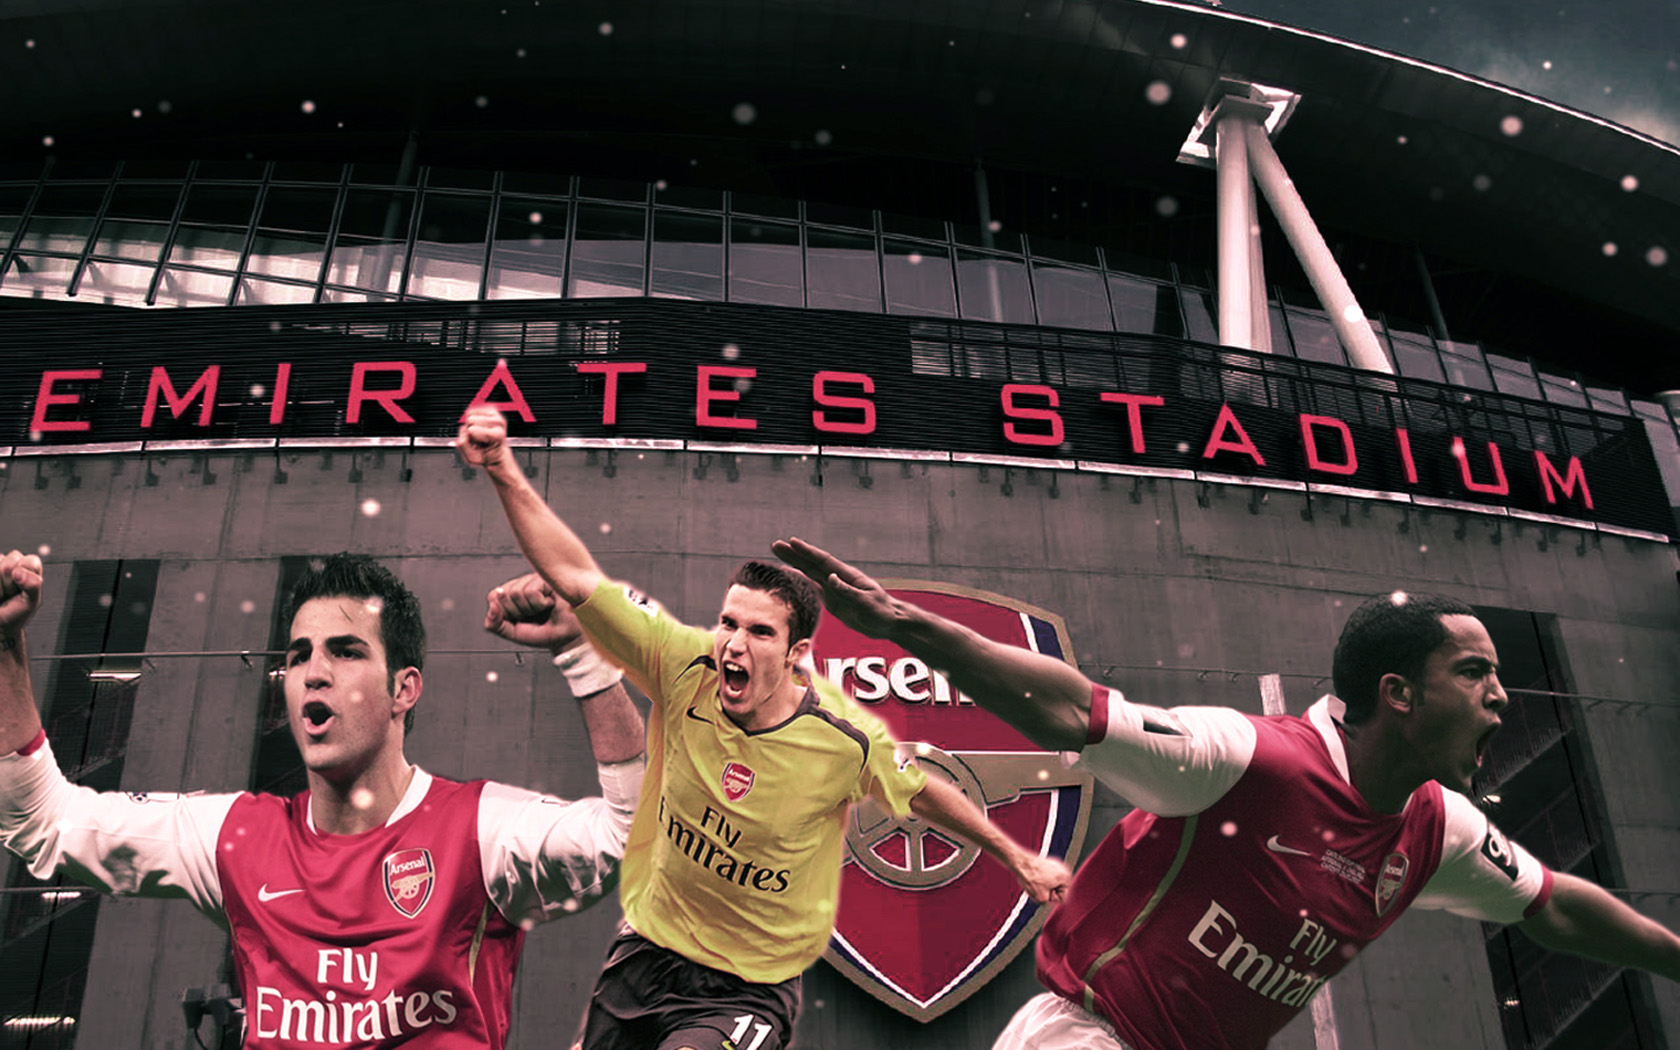 Download Arsenal Emirates Stadium Wallpaper Images #g2f4o